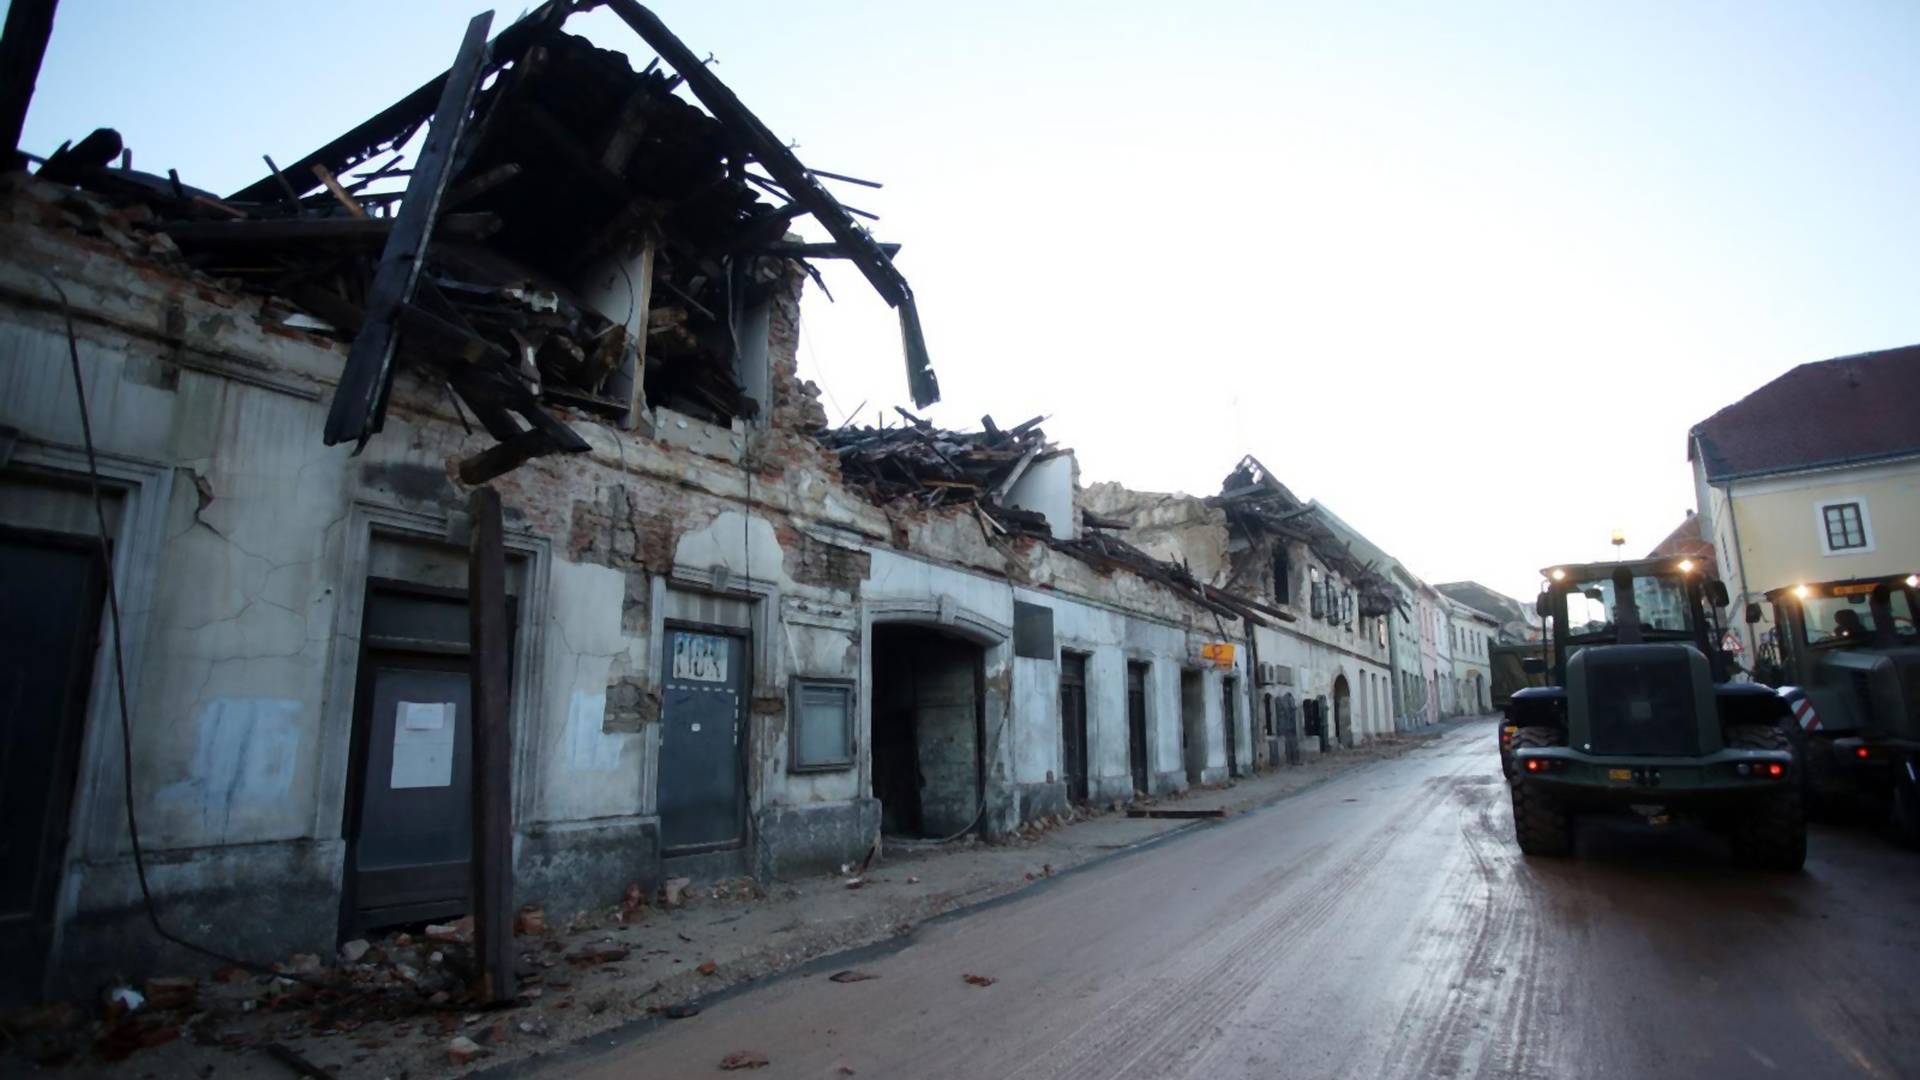 Svi dele status o stanju u Hrvatskoj nakon zemljotresa - najsiromašniji su najuporniji da neće ništa